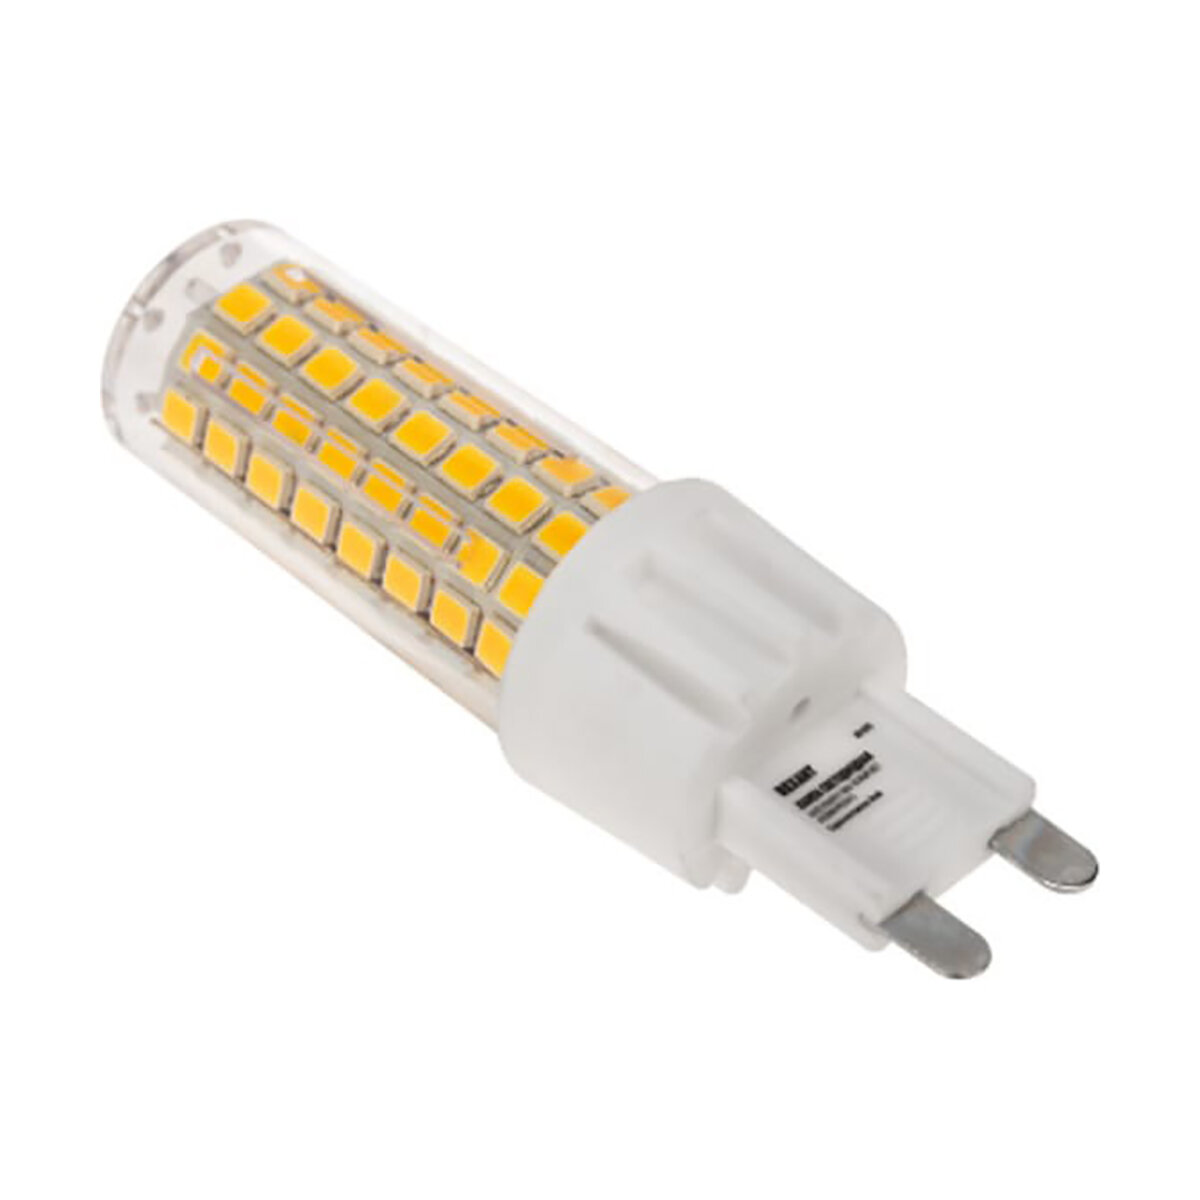 СДС ООО Лампа светодиодная Rexant JD-Corn Капсульная, 7 Вт, 6500 К, G9, холодный свет